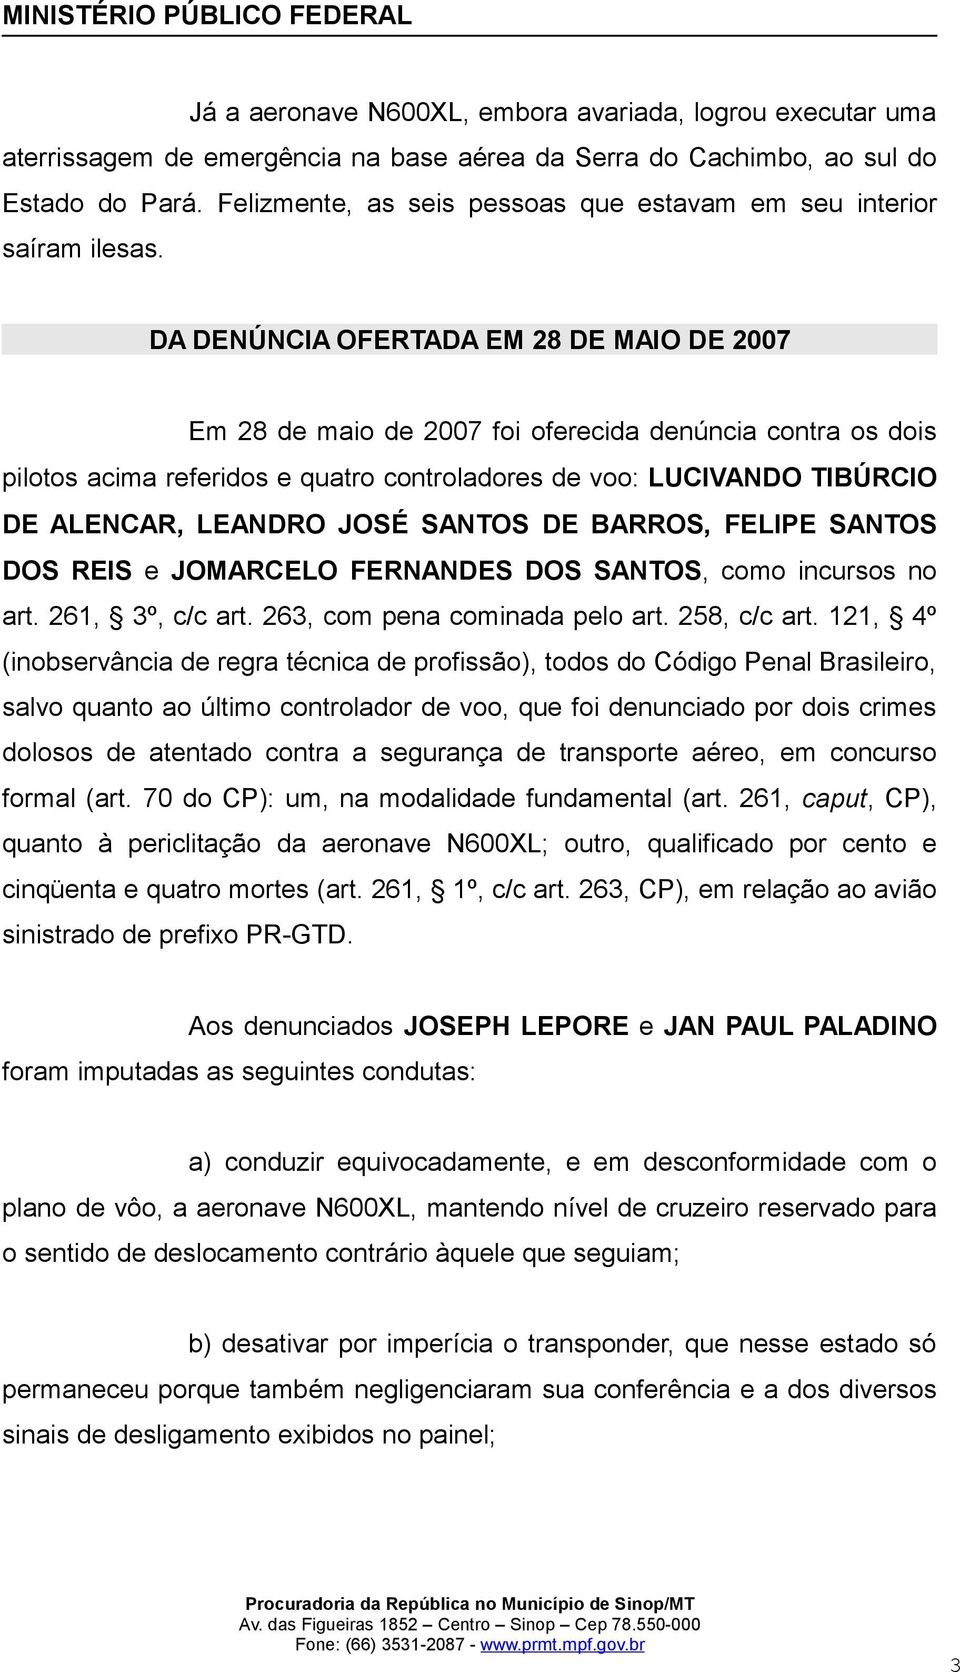 DA DENÚNCIA OFERTADA EM 28 DE MAIO DE 2007 Em 28 de maio de 2007 foi oferecida denúncia contra os dois pilotos acima referidos e quatro controladores de voo: LUCIVANDO TIBÚRCIO DE ALENCAR, LEANDRO